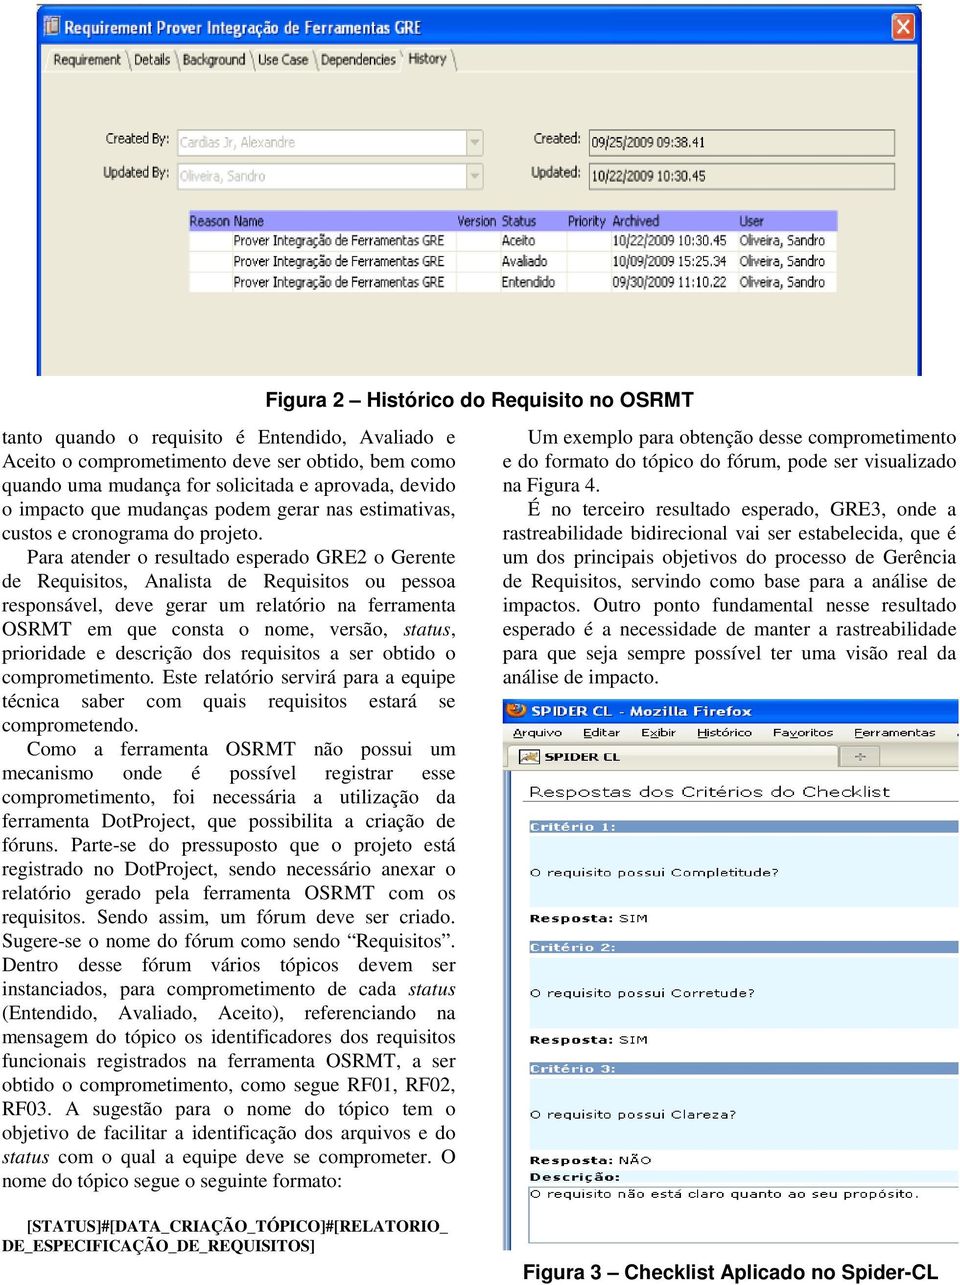 Para atender o resultado esperado GRE2 o Gerente de Requisitos, Analista de Requisitos ou pessoa responsável, deve gerar um relatório na ferramenta OSRMT em que consta o nome, versão, status,